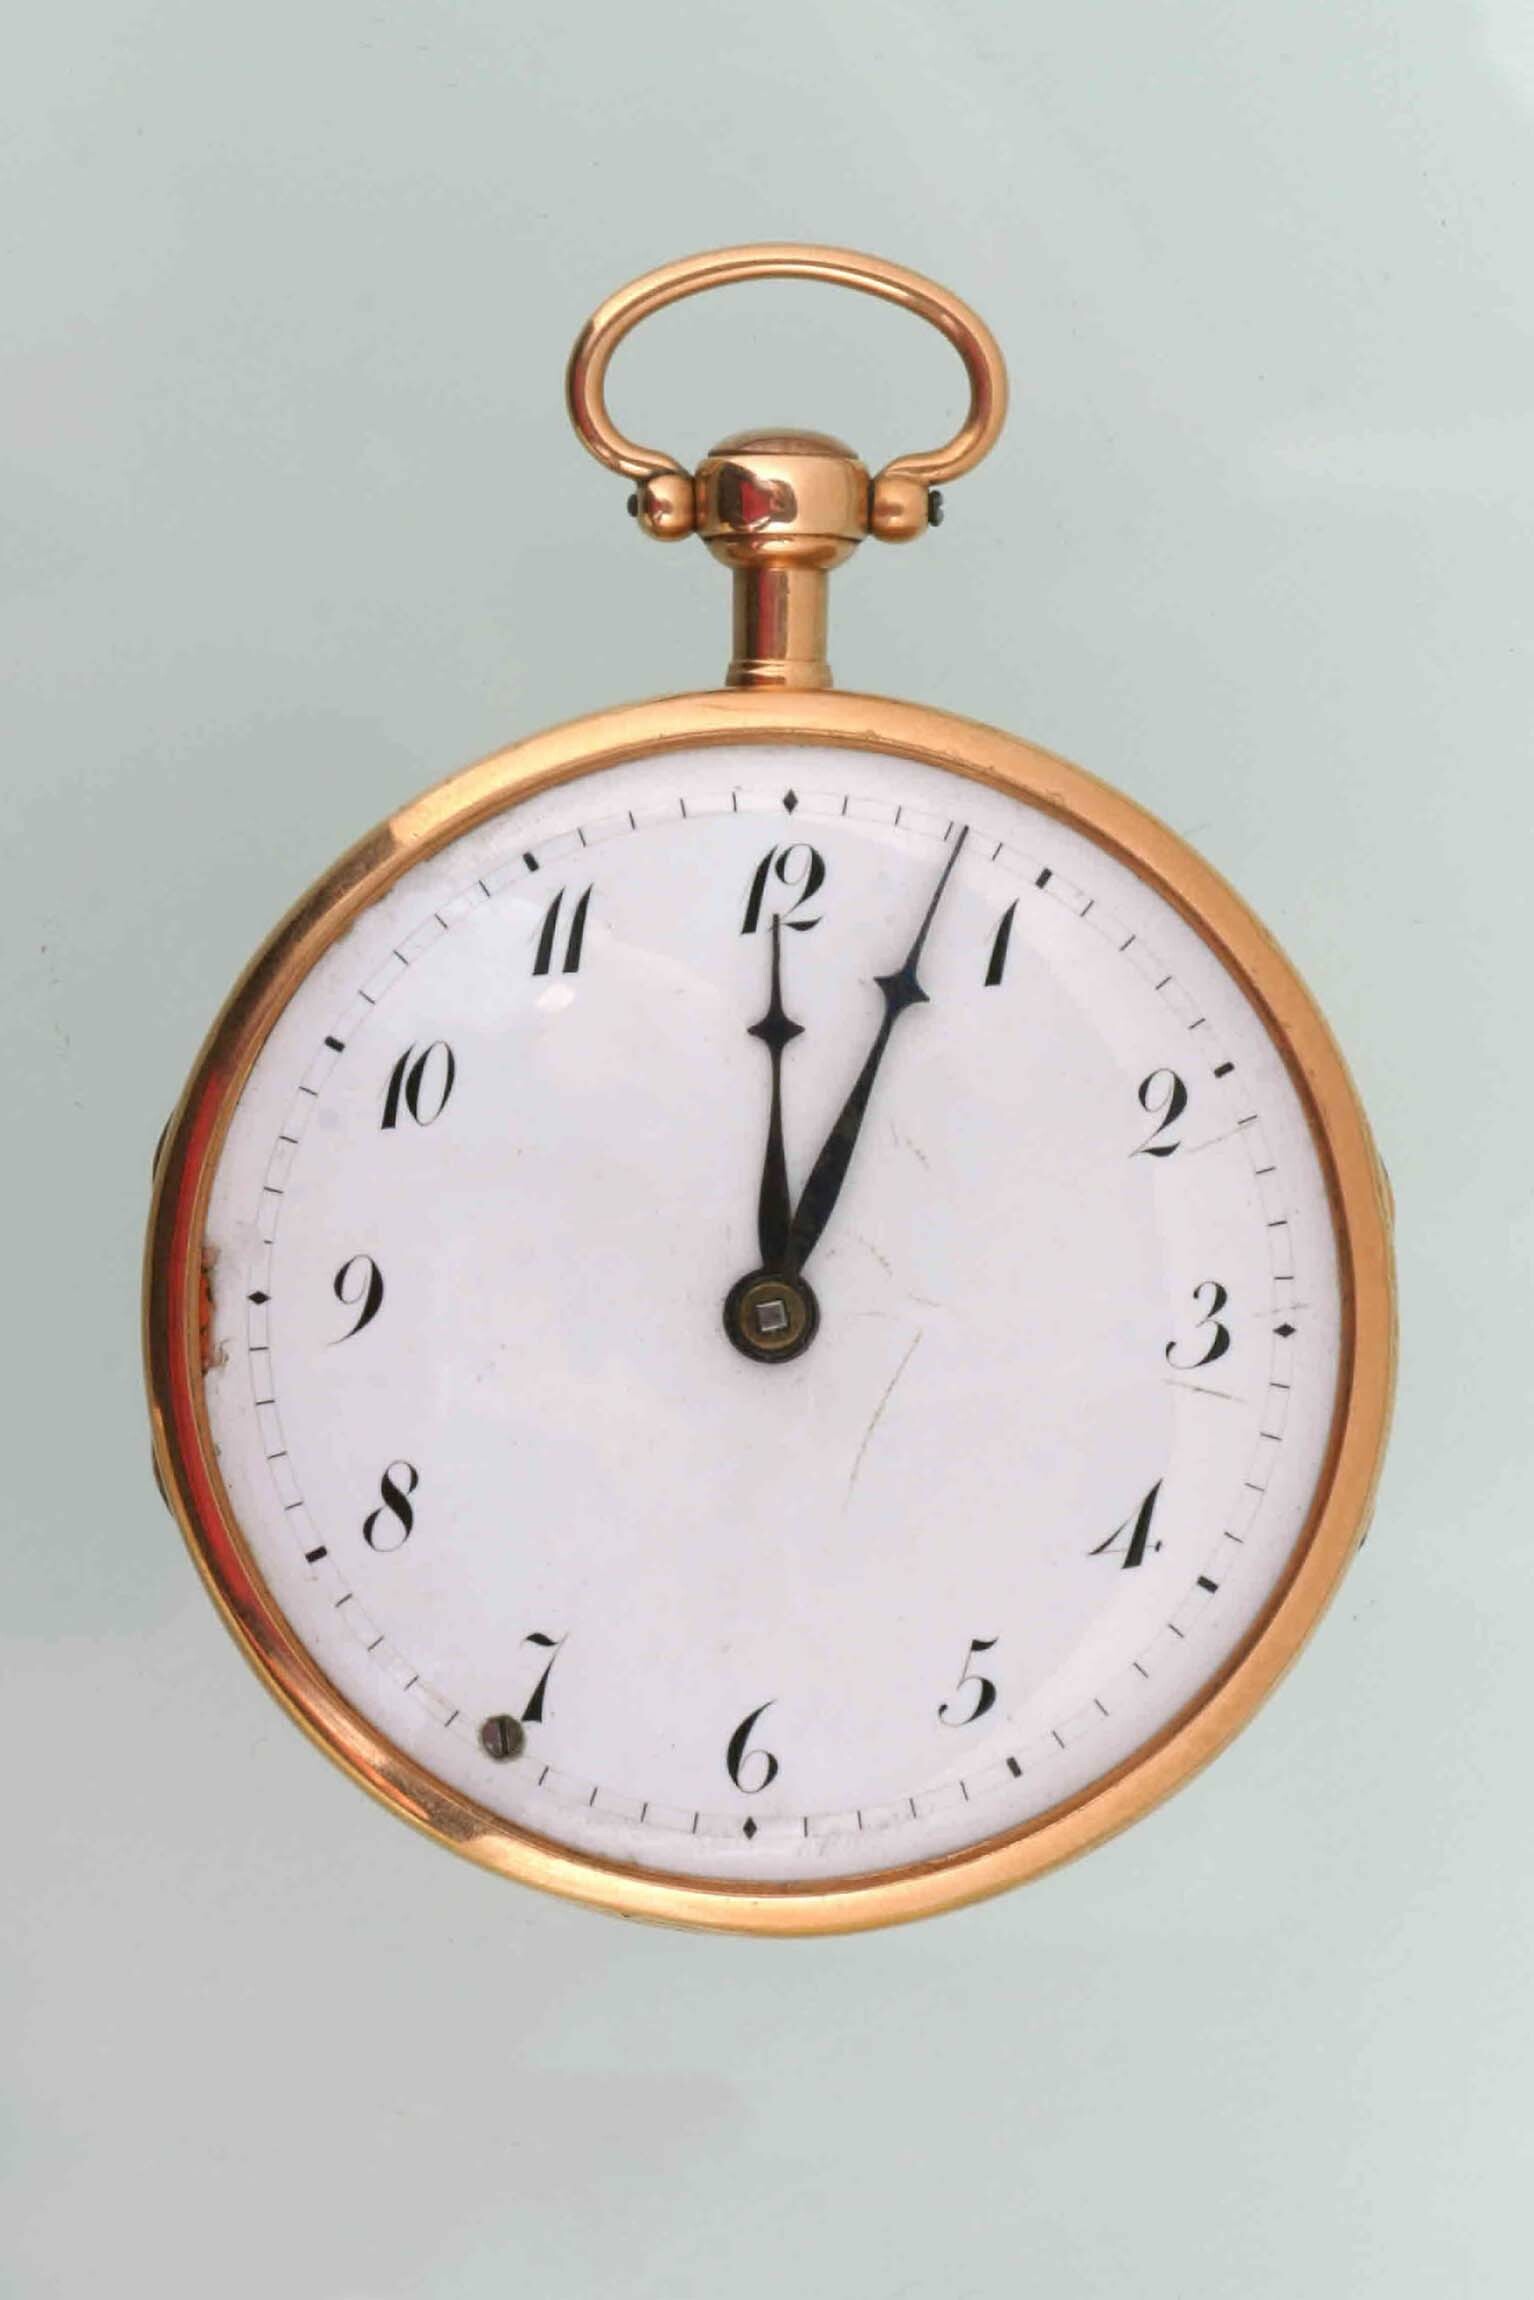 Taschenuhr, wohl Johann Georg Messy, Freiburg, um 1820 (Deutsches Uhrenmuseum CC BY-SA)